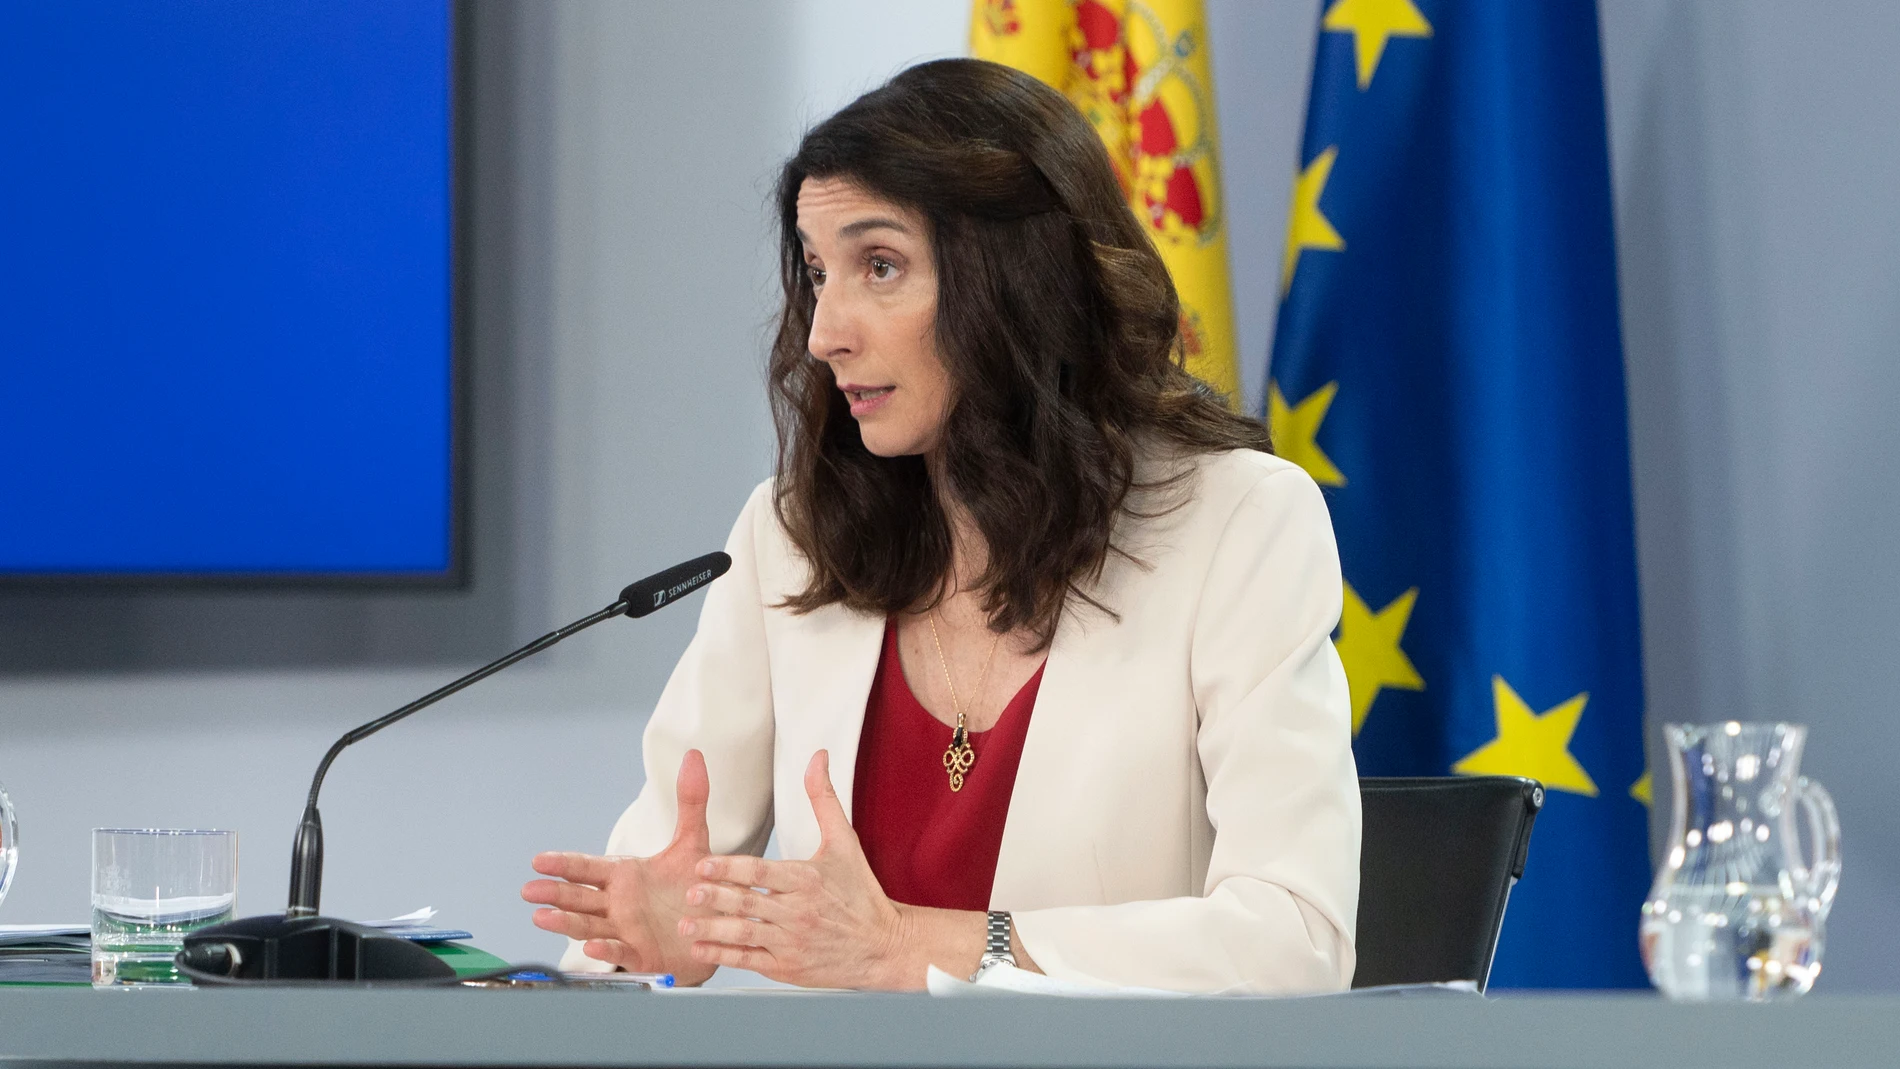 La ministra de Justicia, Pilar Llop, anunció ayer tras el Consejo de Ministros que el candidato a sustituir a Delgado es su "número dos", Álvaro García Ortiz